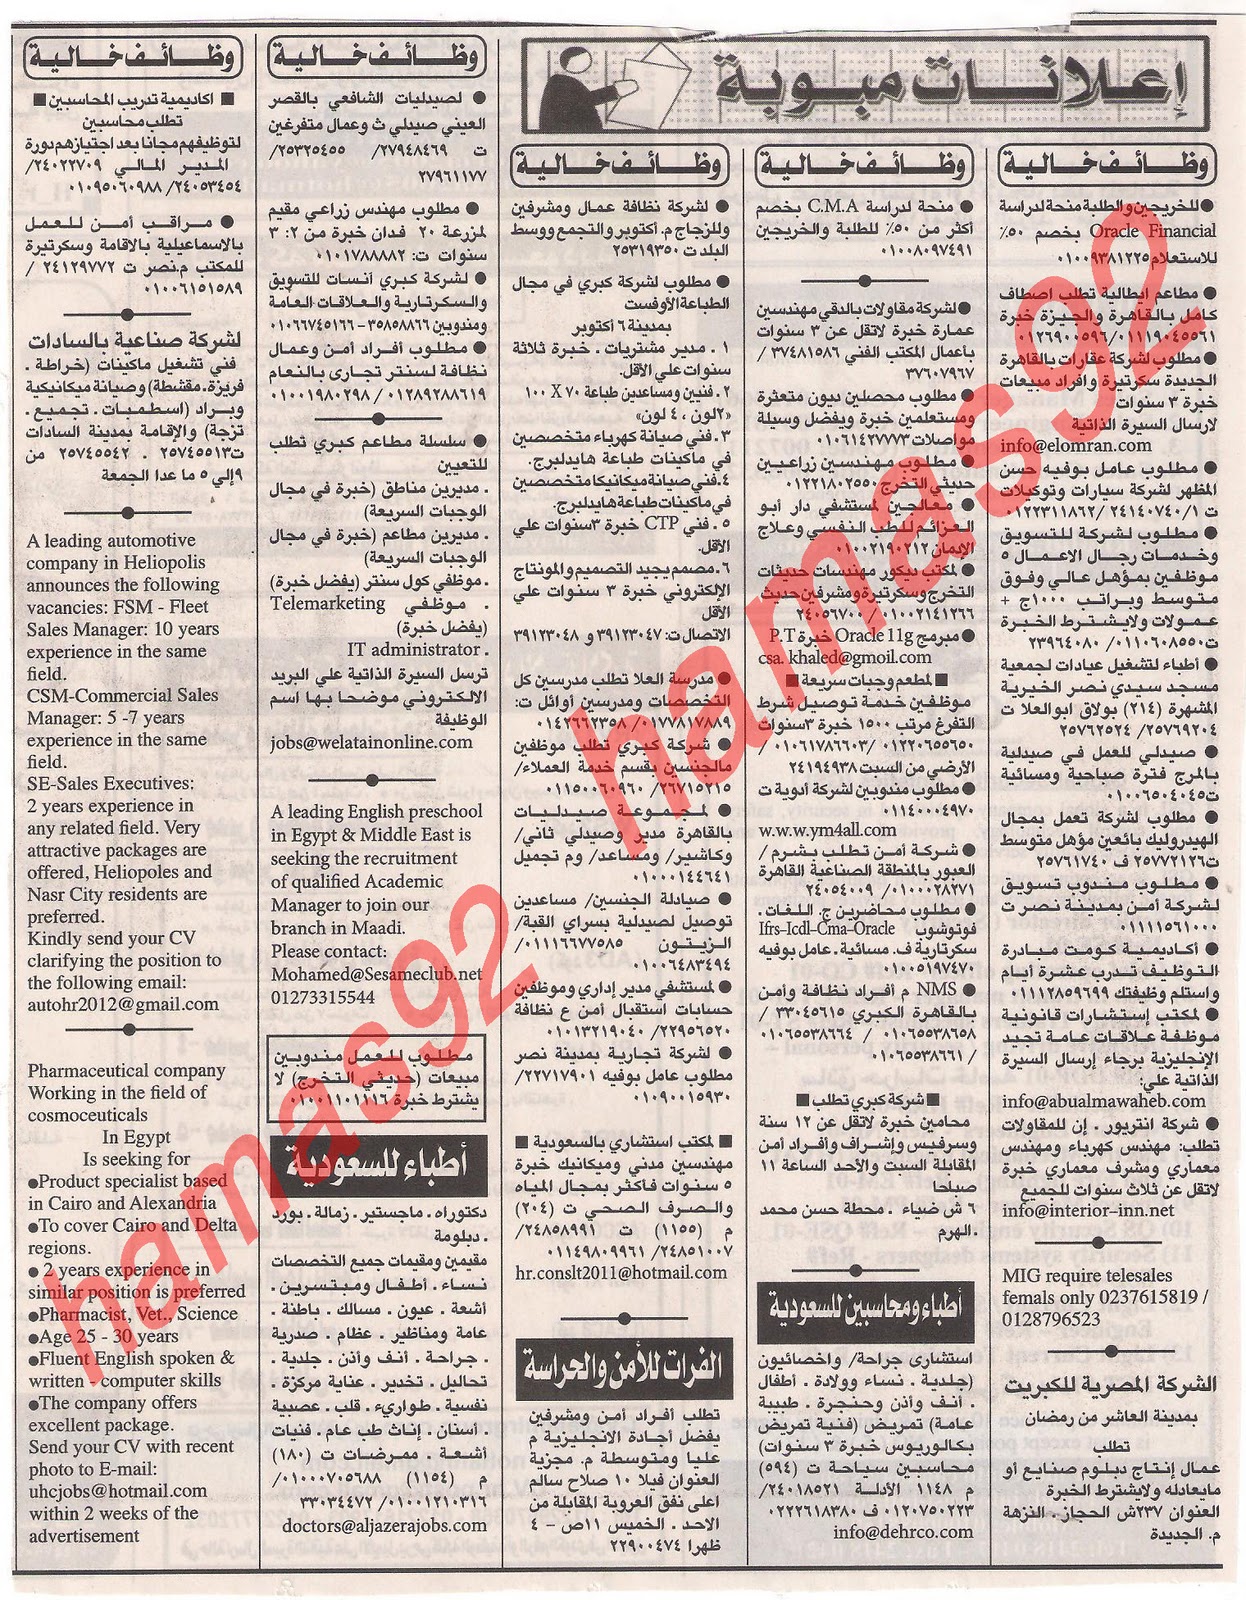 وظائف جريدة الاهرام الجمعة 9  ديسمبر 2011 , الجزء الاول , وظائف اهرام الجمعة 9\12\2011 Picture+004